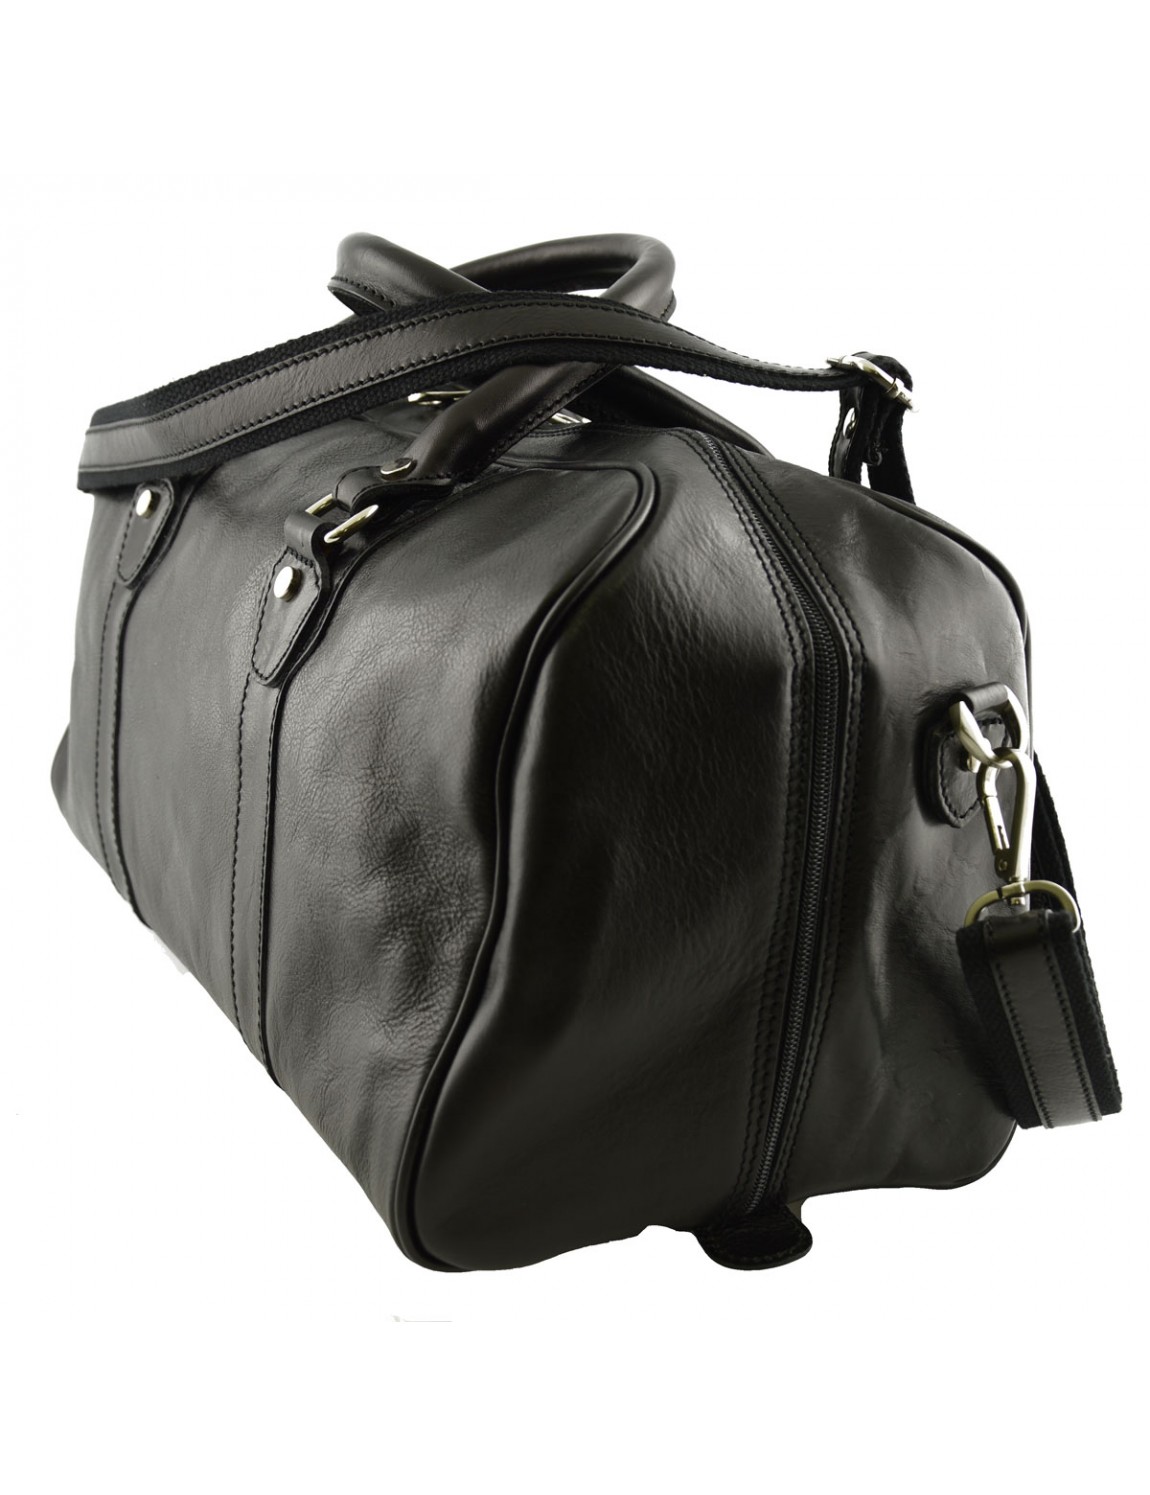 Włoska skórzana torba podróżna. Z tą praktyczną torbą wykonaną z prawdziwej toskańskiej skóry trudno przejść niezauważonym.